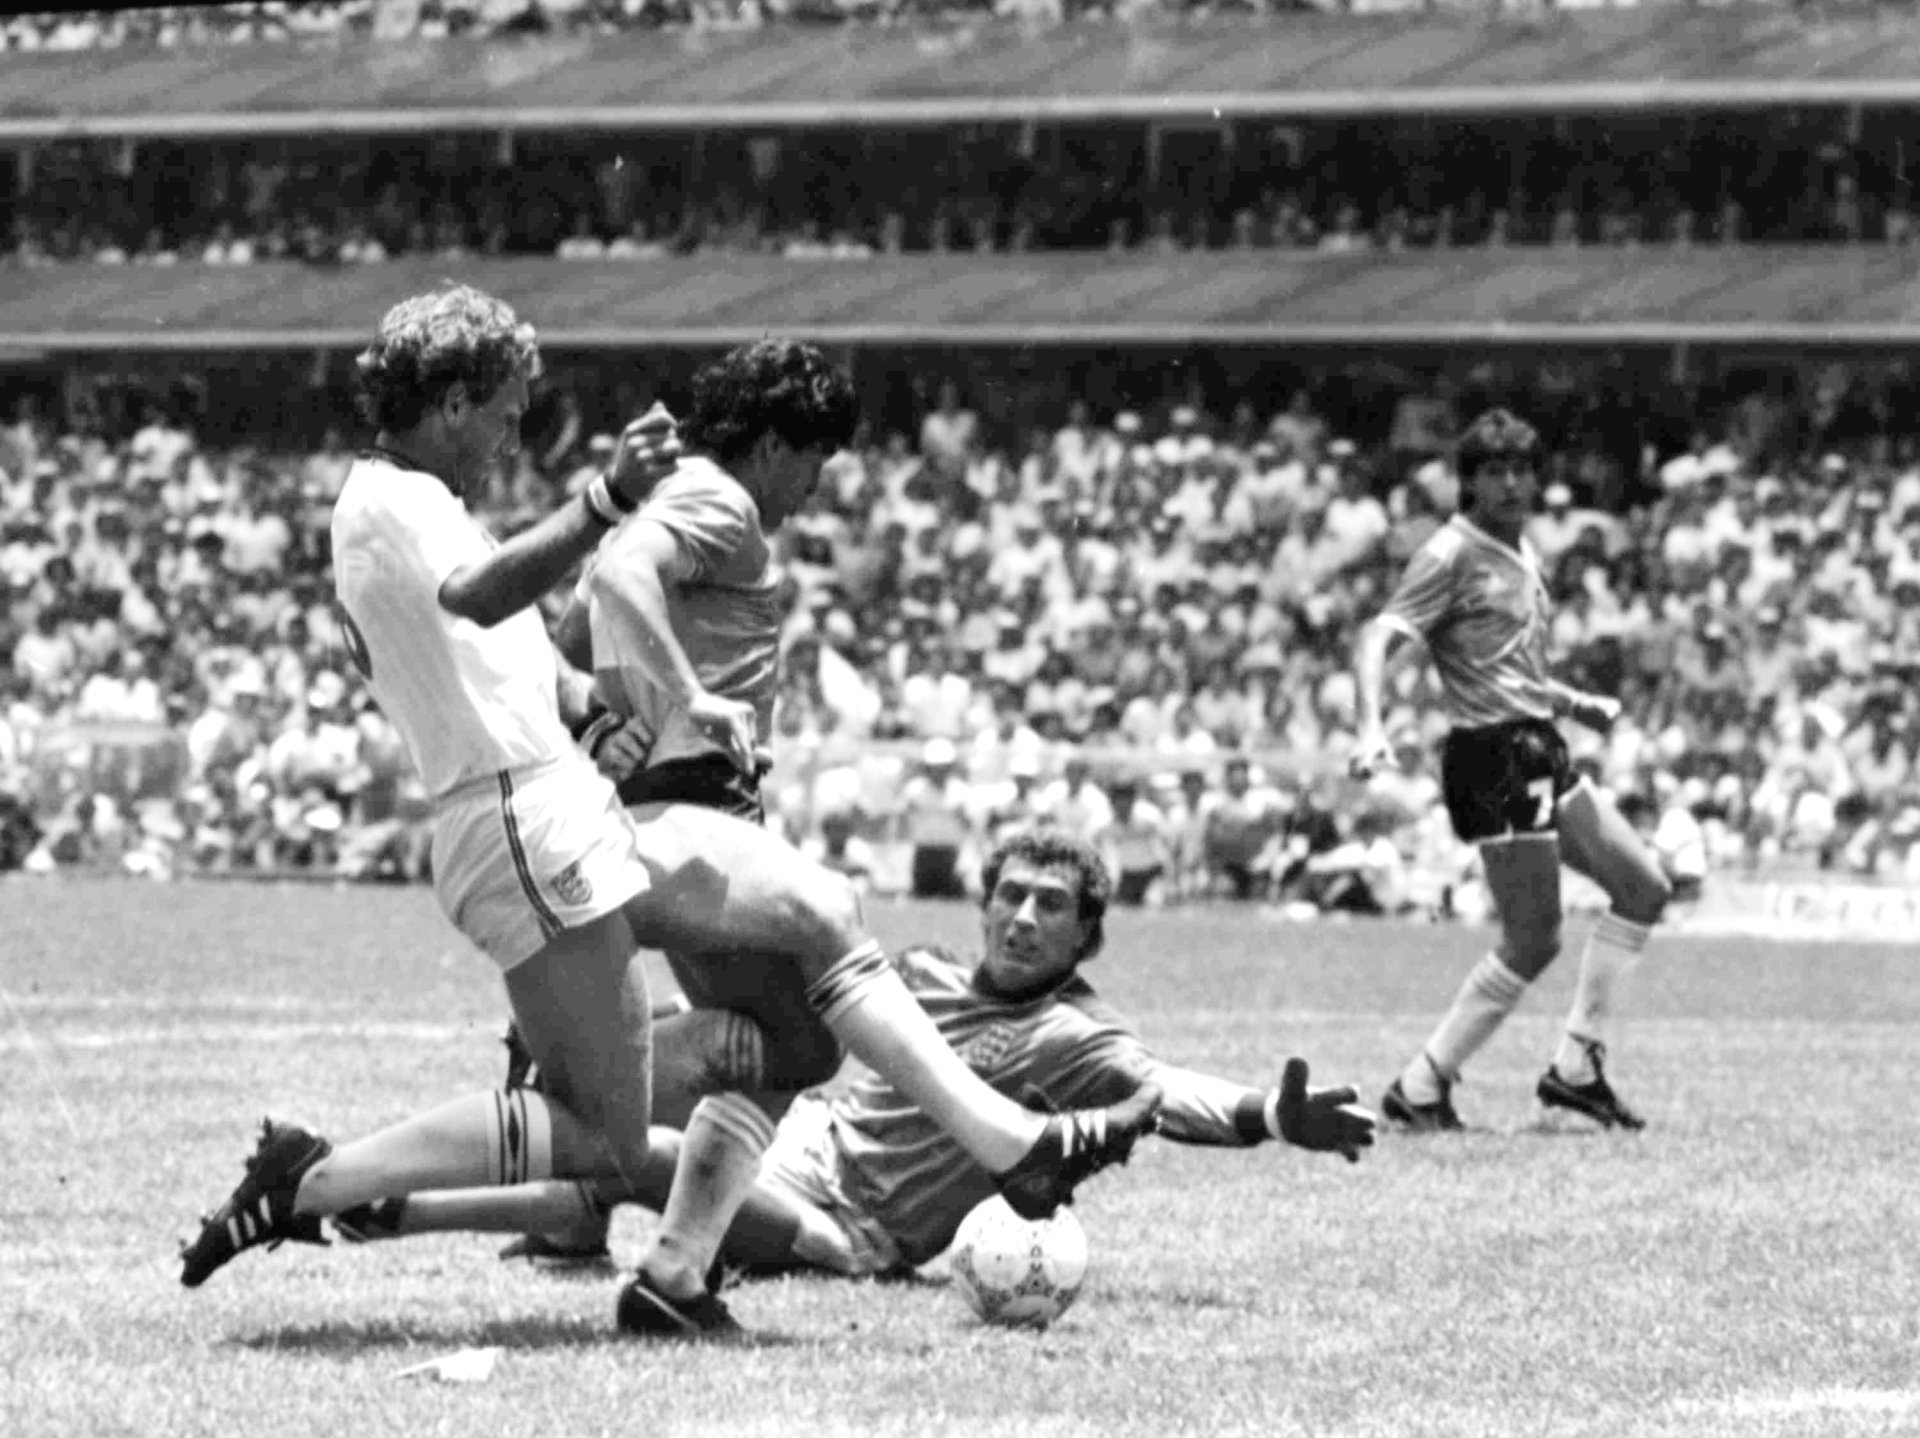 Le capitaine argentin élimine le gardien Shilton et propulse le ballon au fond des filets. Il conclut une action de légende.